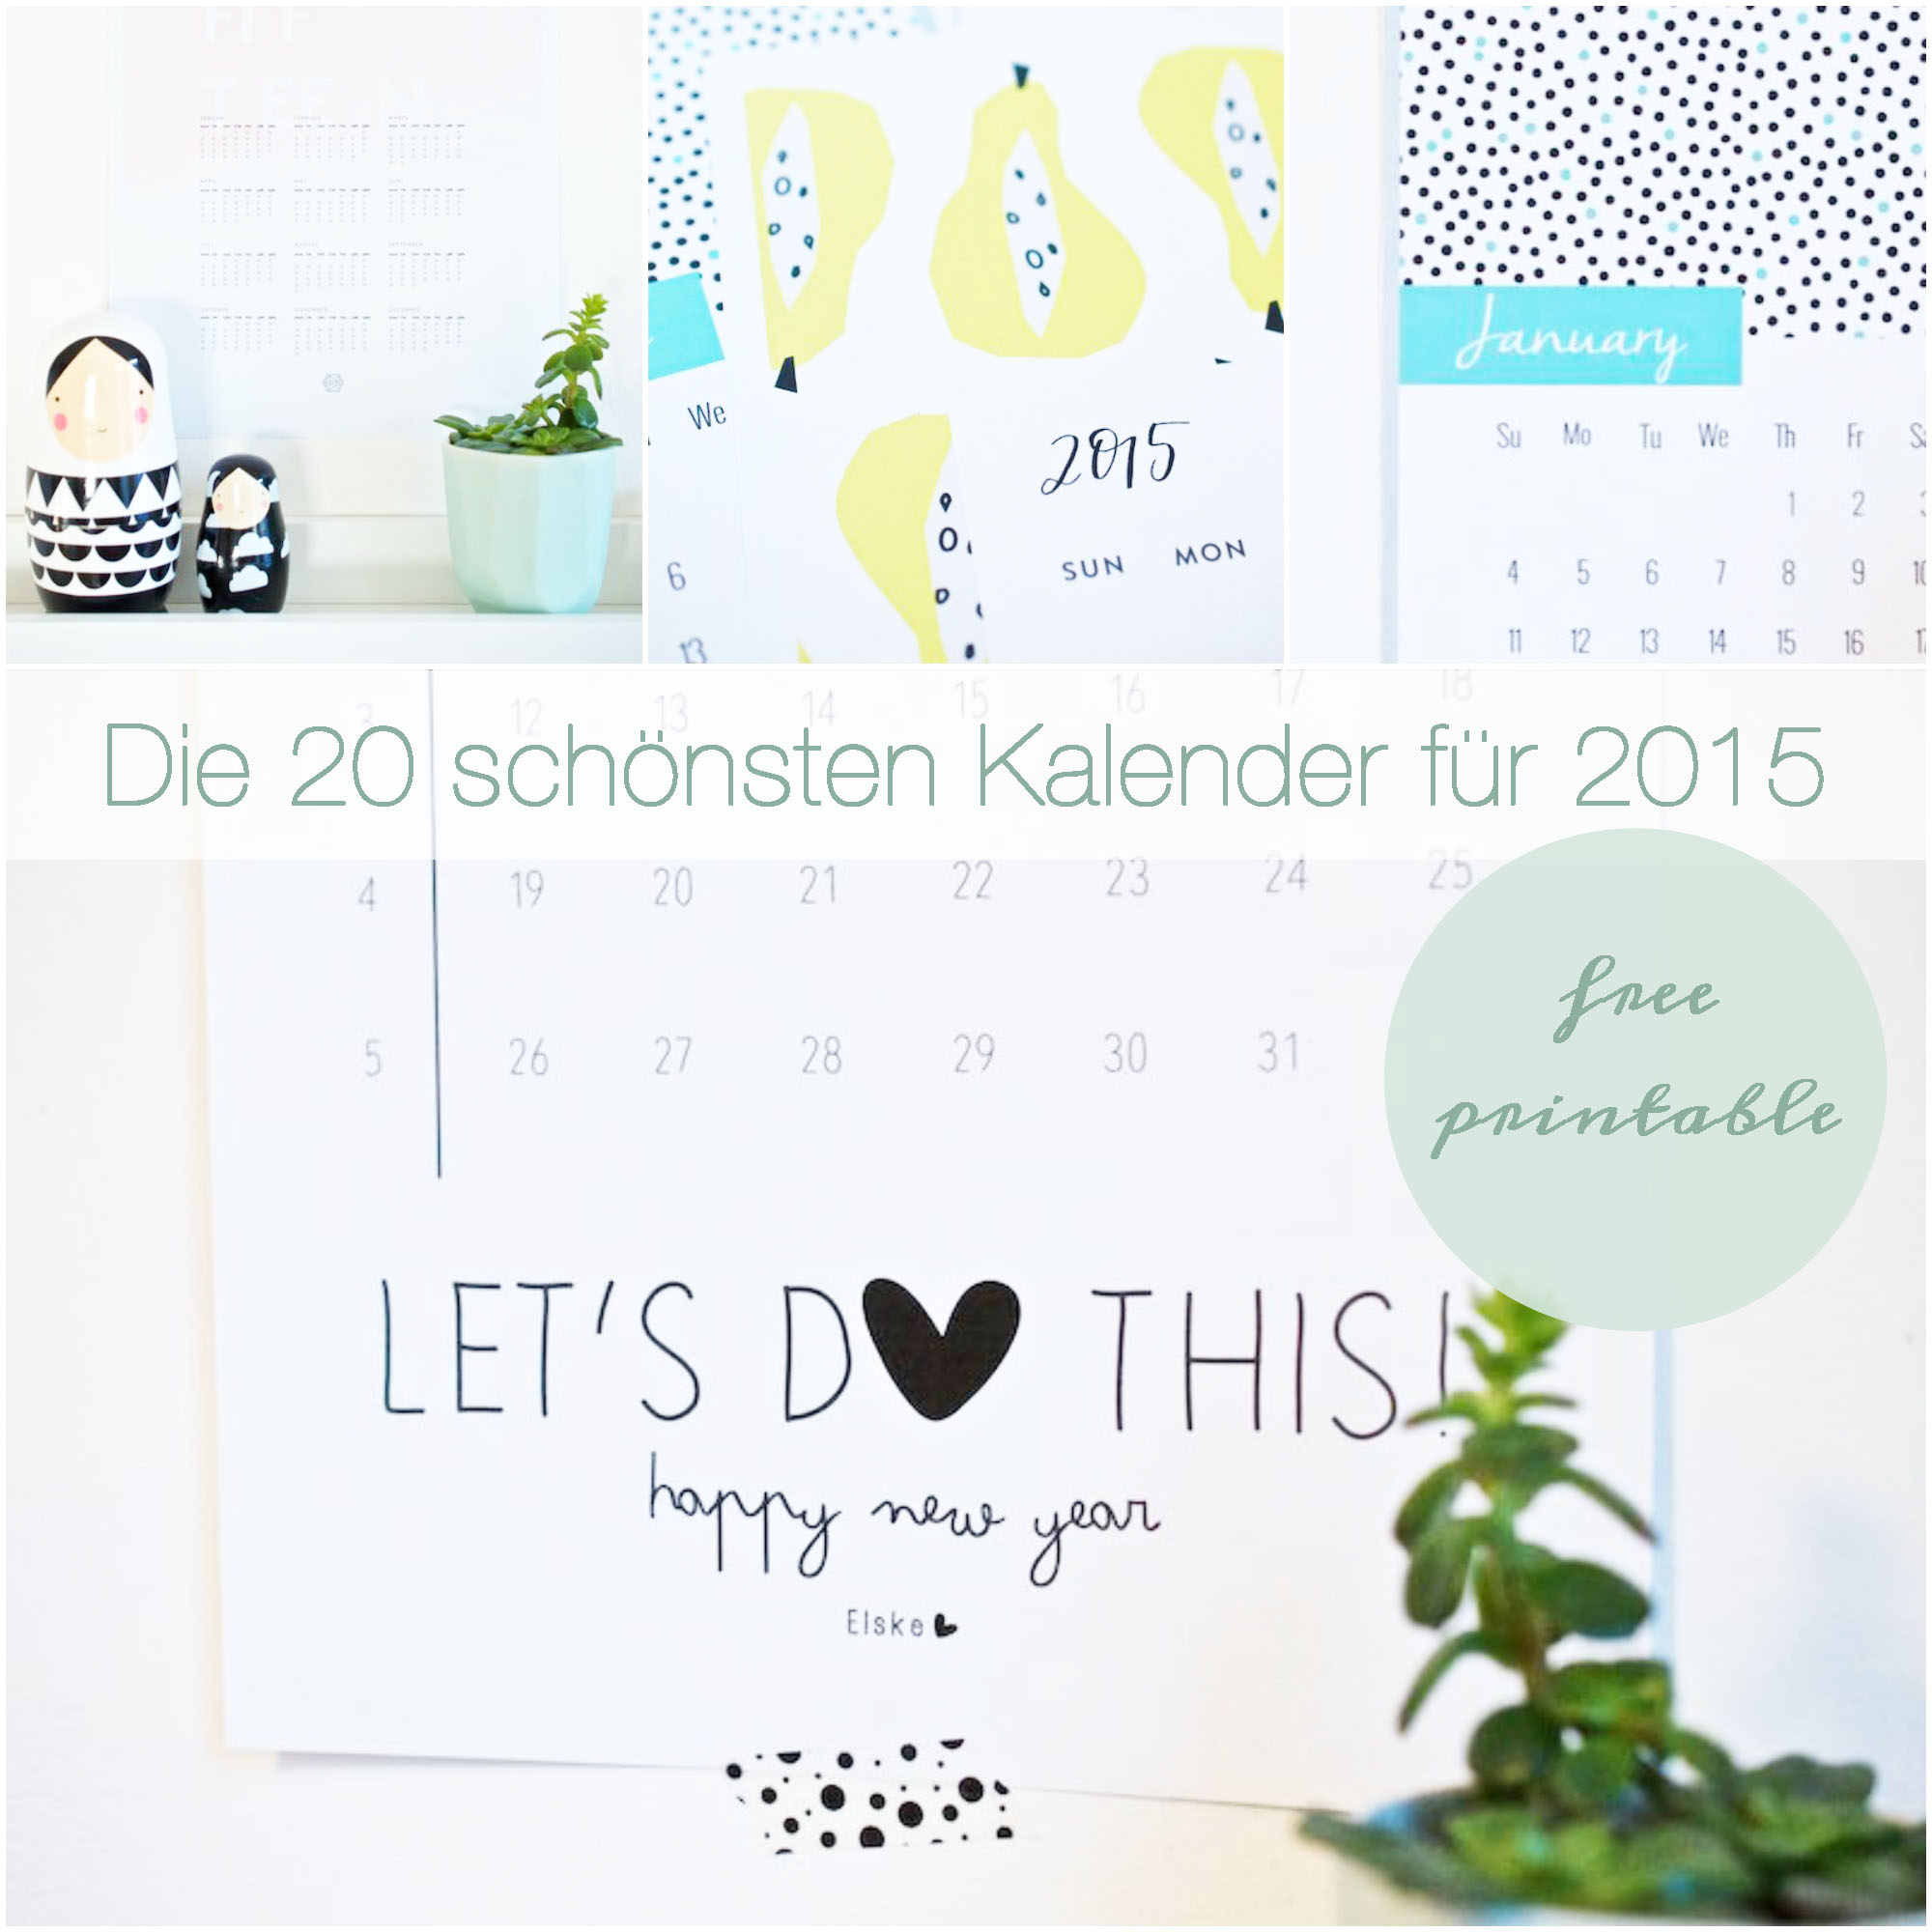 Die 20 schönsten Kalender für 2015 Free Printable